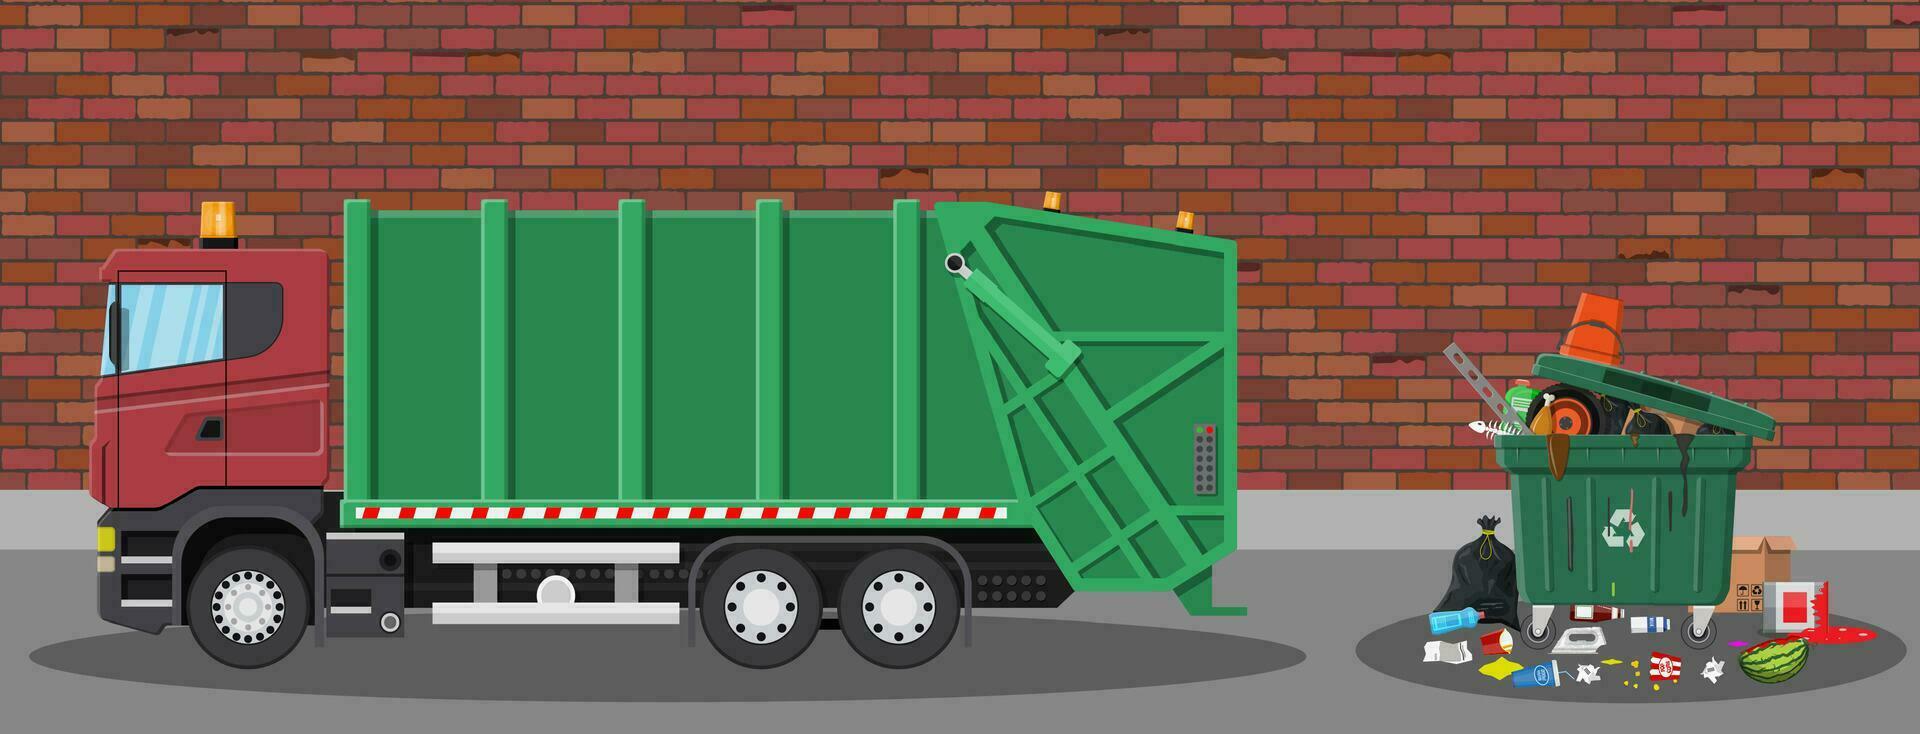 un camion pour assemblage et transport ordures. voiture déchets disposition. pouvez récipient, sac et seau pour ordures. recyclage et utilisation équipement. rue. vecteur illustration dans plat style